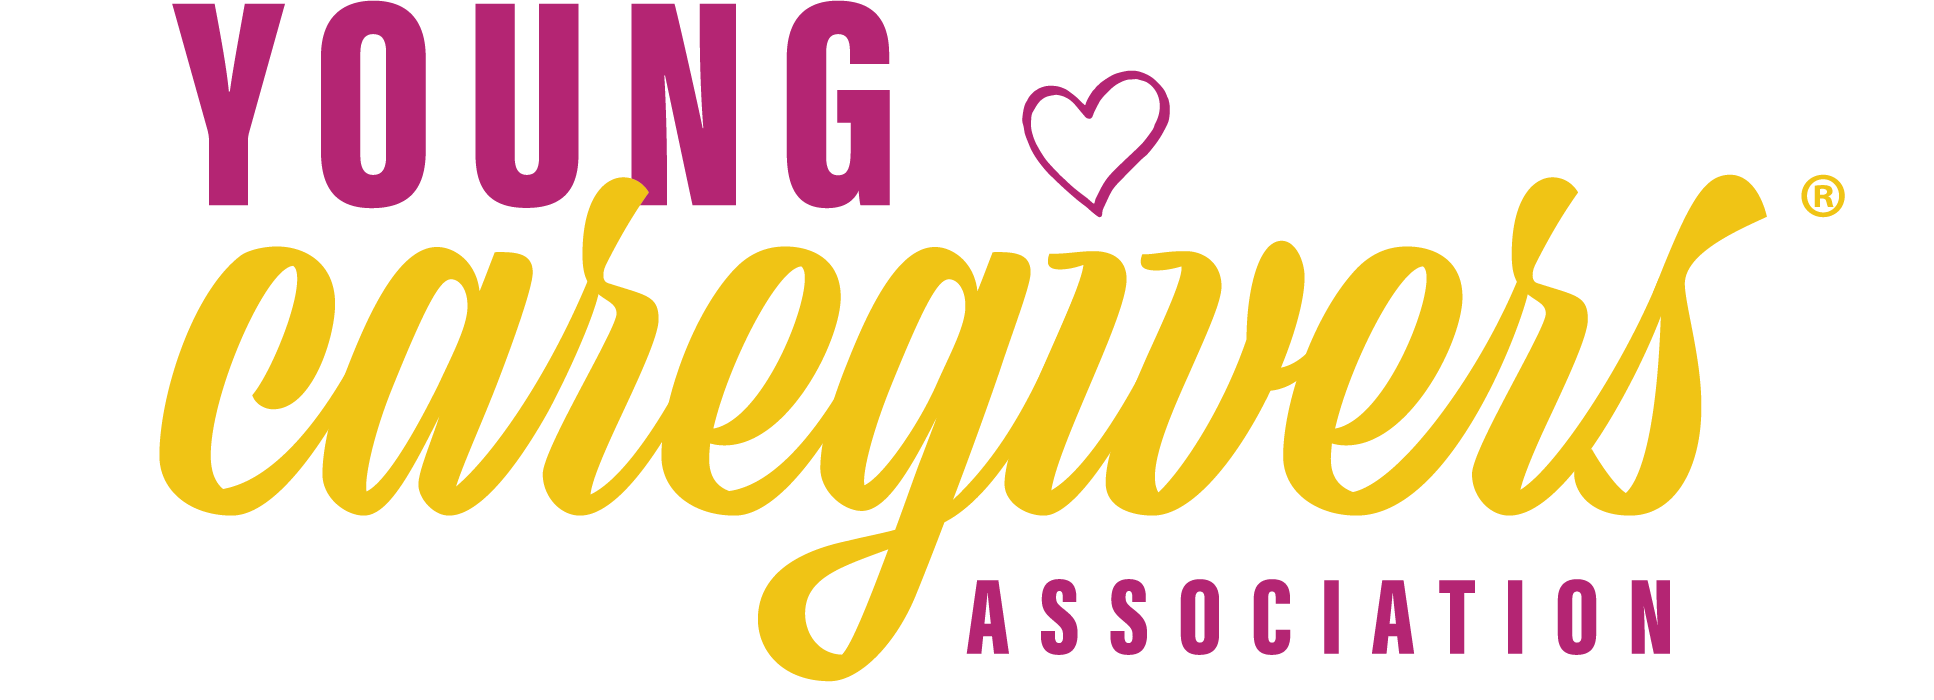 Young Caregivers Association logo